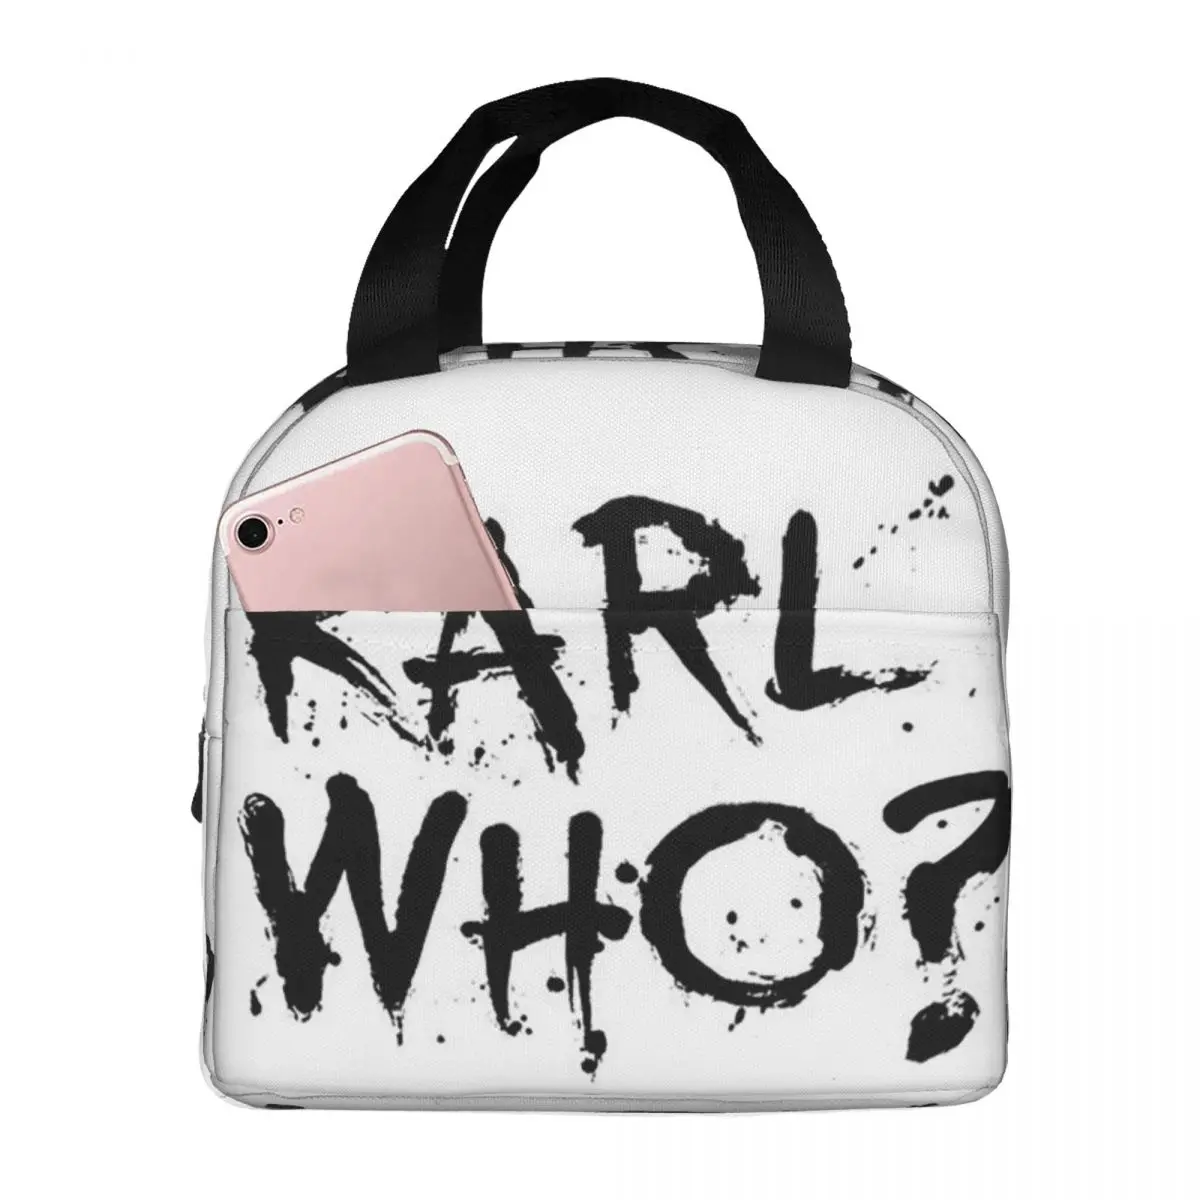 Изолированные сумки для ланча Karl Who, портативные сумки для пикника, термоохладитель, ланч-бокс, сумка для ланча для женщин, работы, детей, школы